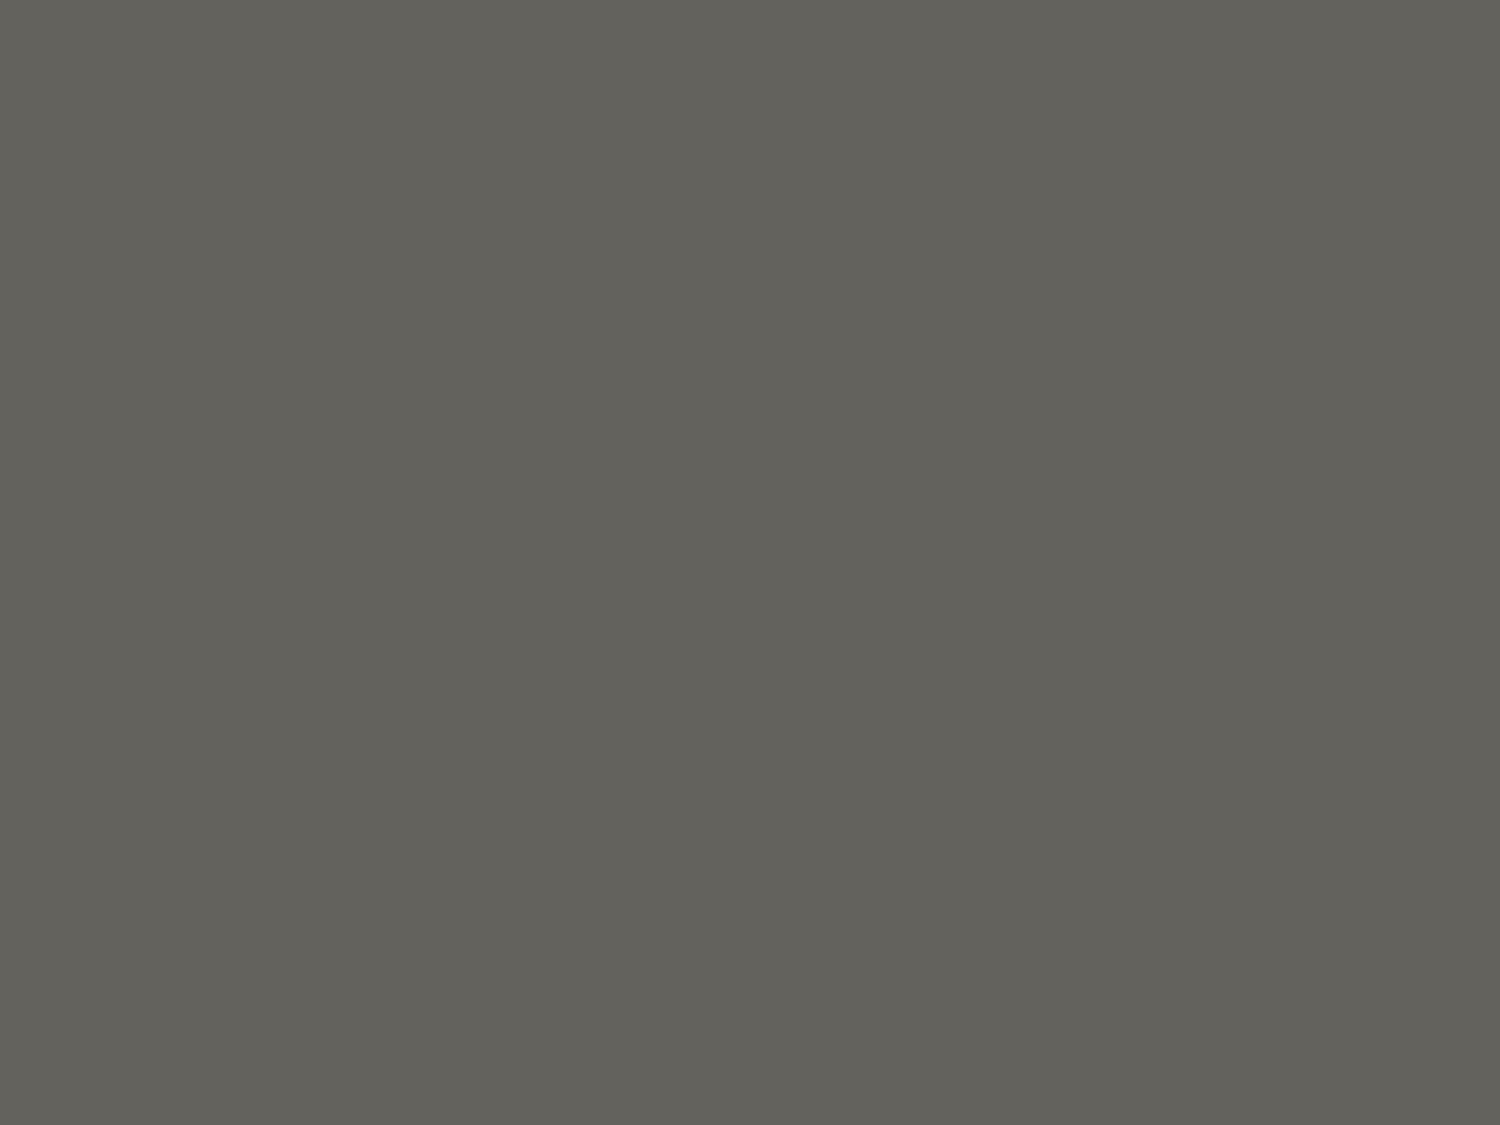 Реконструкция дома Наркомфина. Москва, 2018 год. Фотография: Максим Стулов / ТАСС